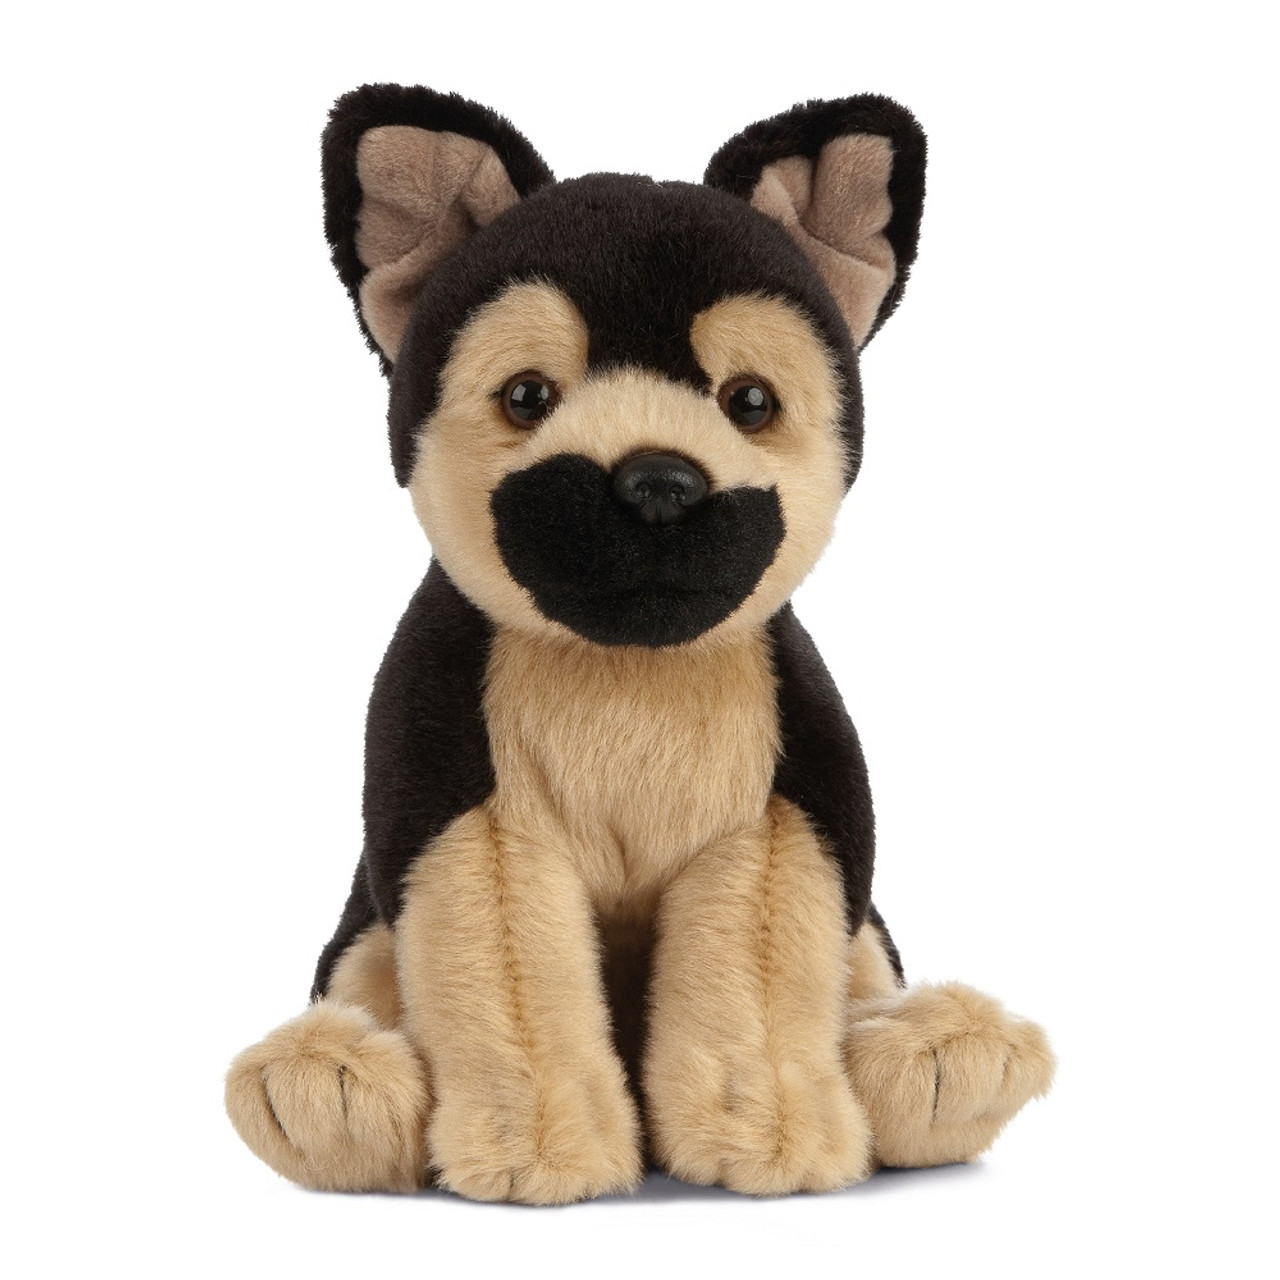 Lifelike German Shepherd Stuffed Animal Plush Toy